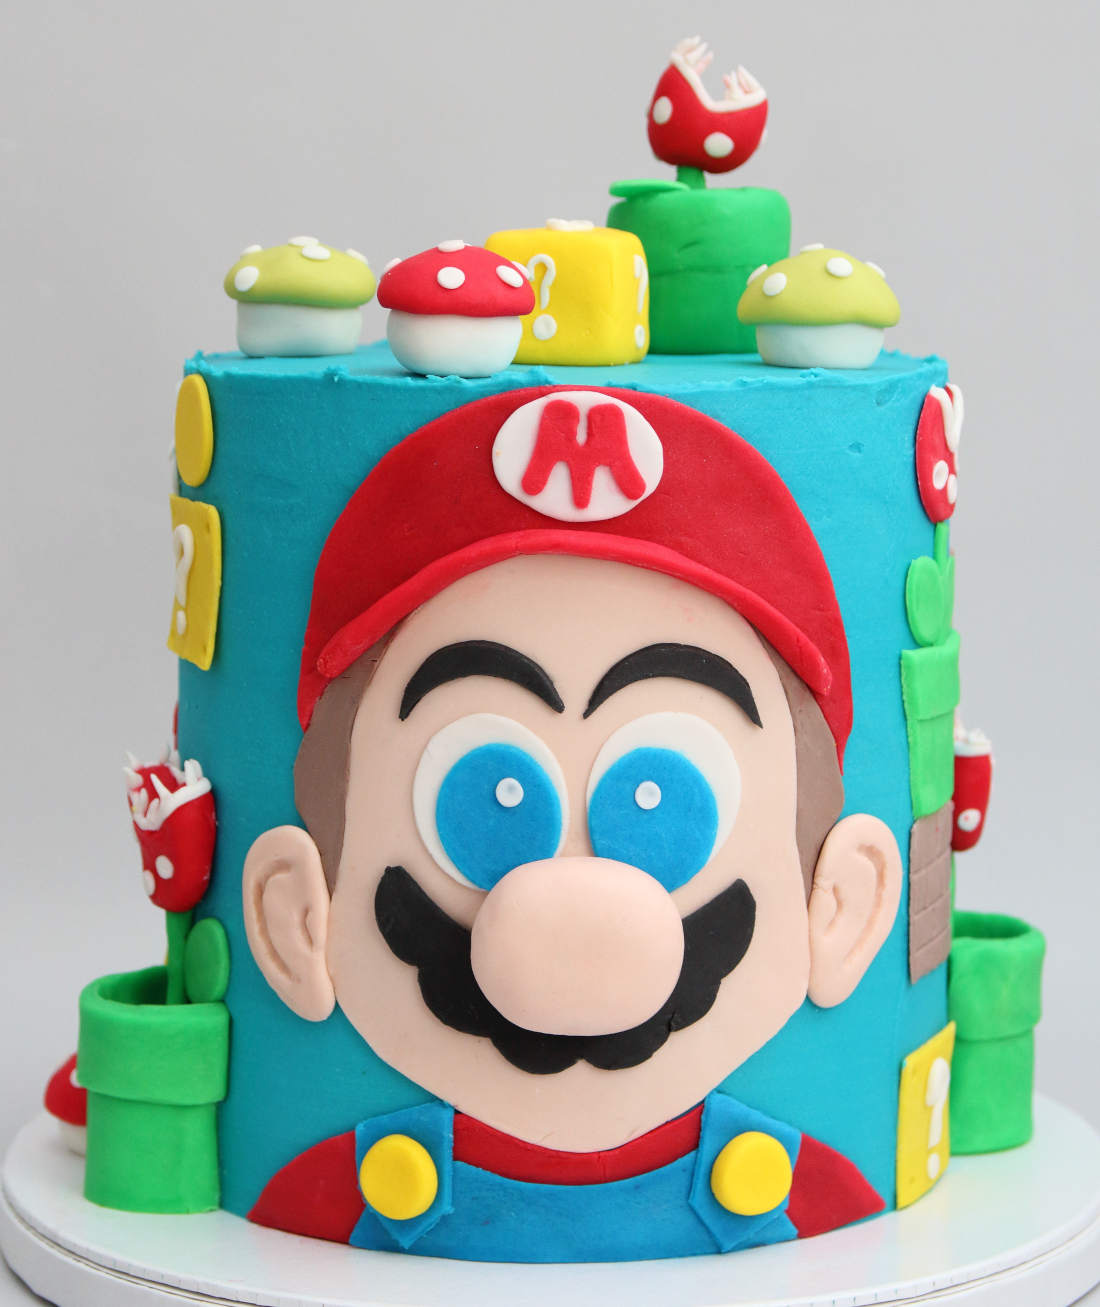 Mario cake - a delicious birthday gift